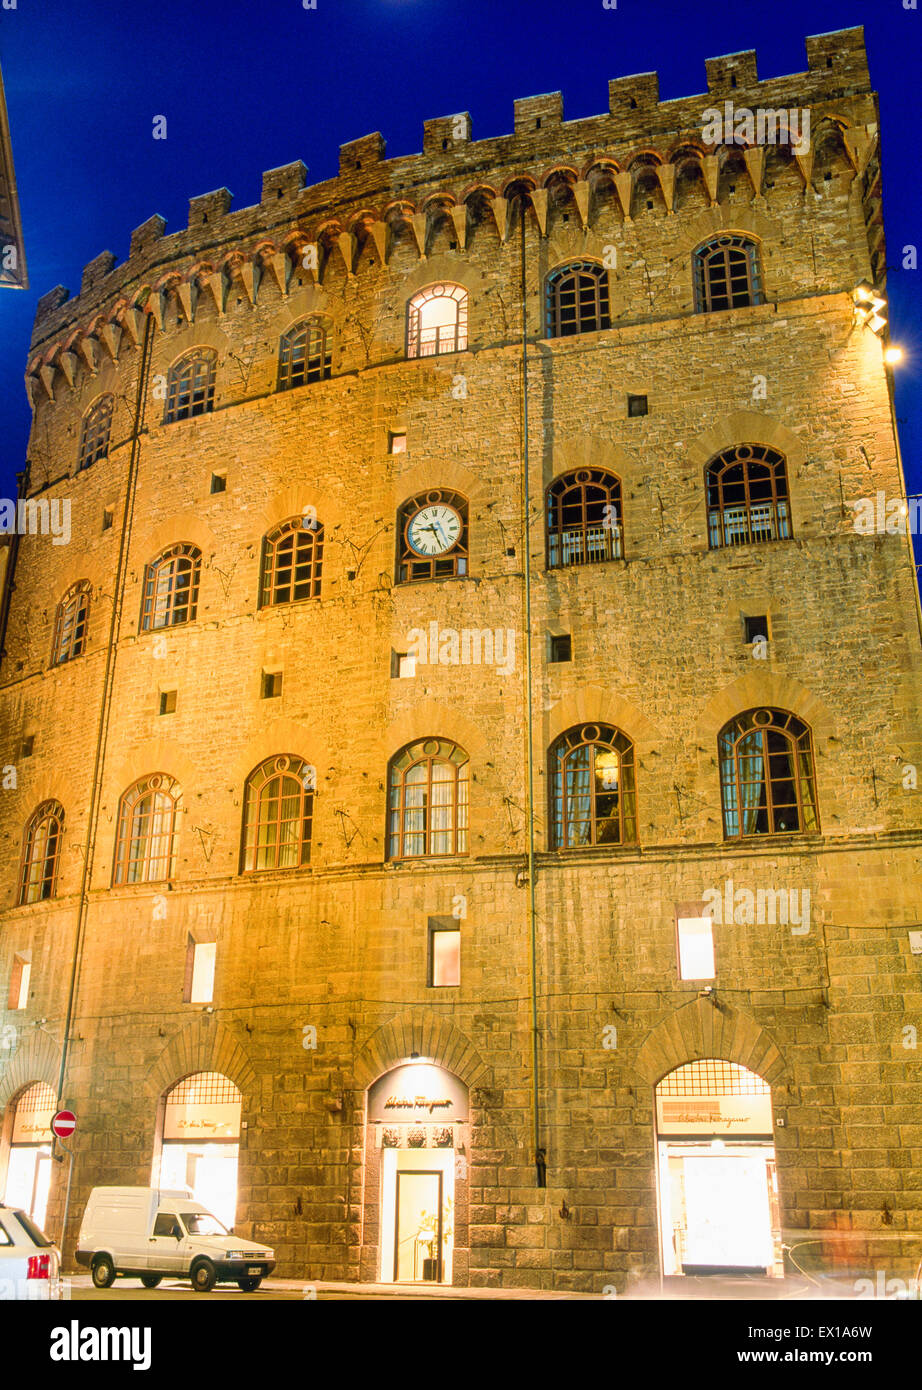 Palazzo Spini Feroni, la sede mondiale di Salvatore Ferragamo a Firenze,  Italia. Immagine scattata di notte Foto stock - Alamy